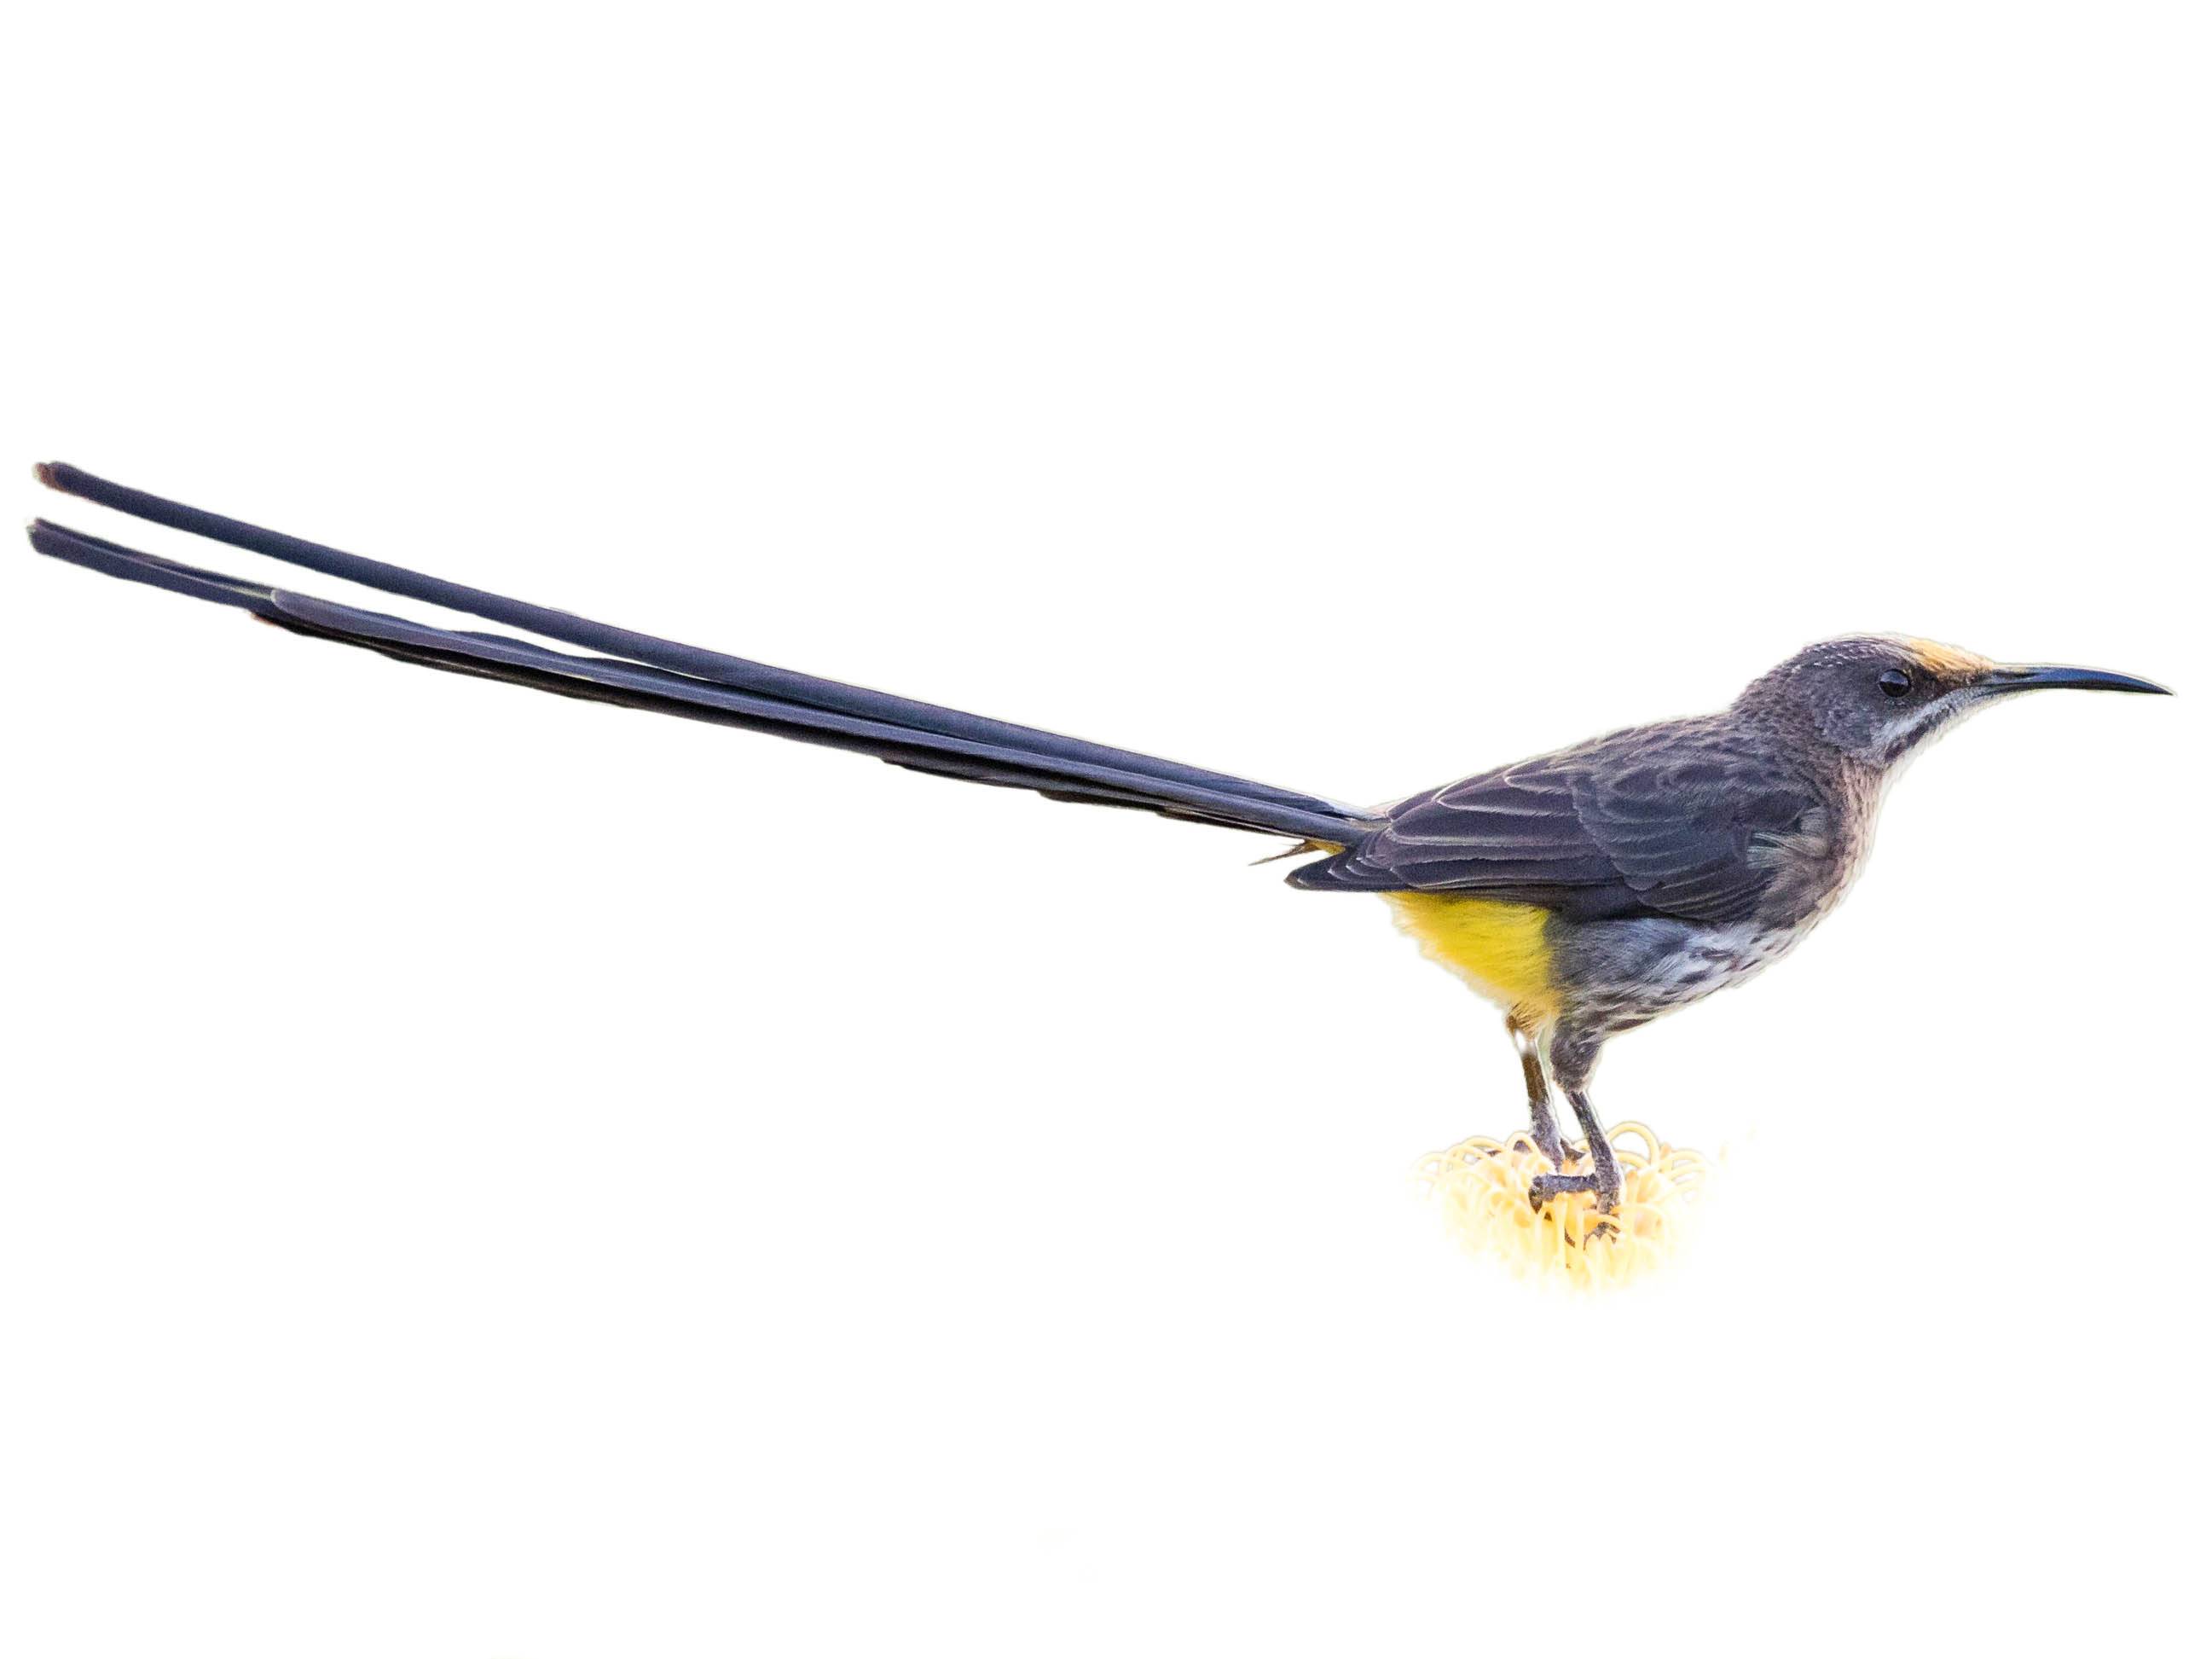 A photo of a Cape Sugarbird (Promerops cafer), male